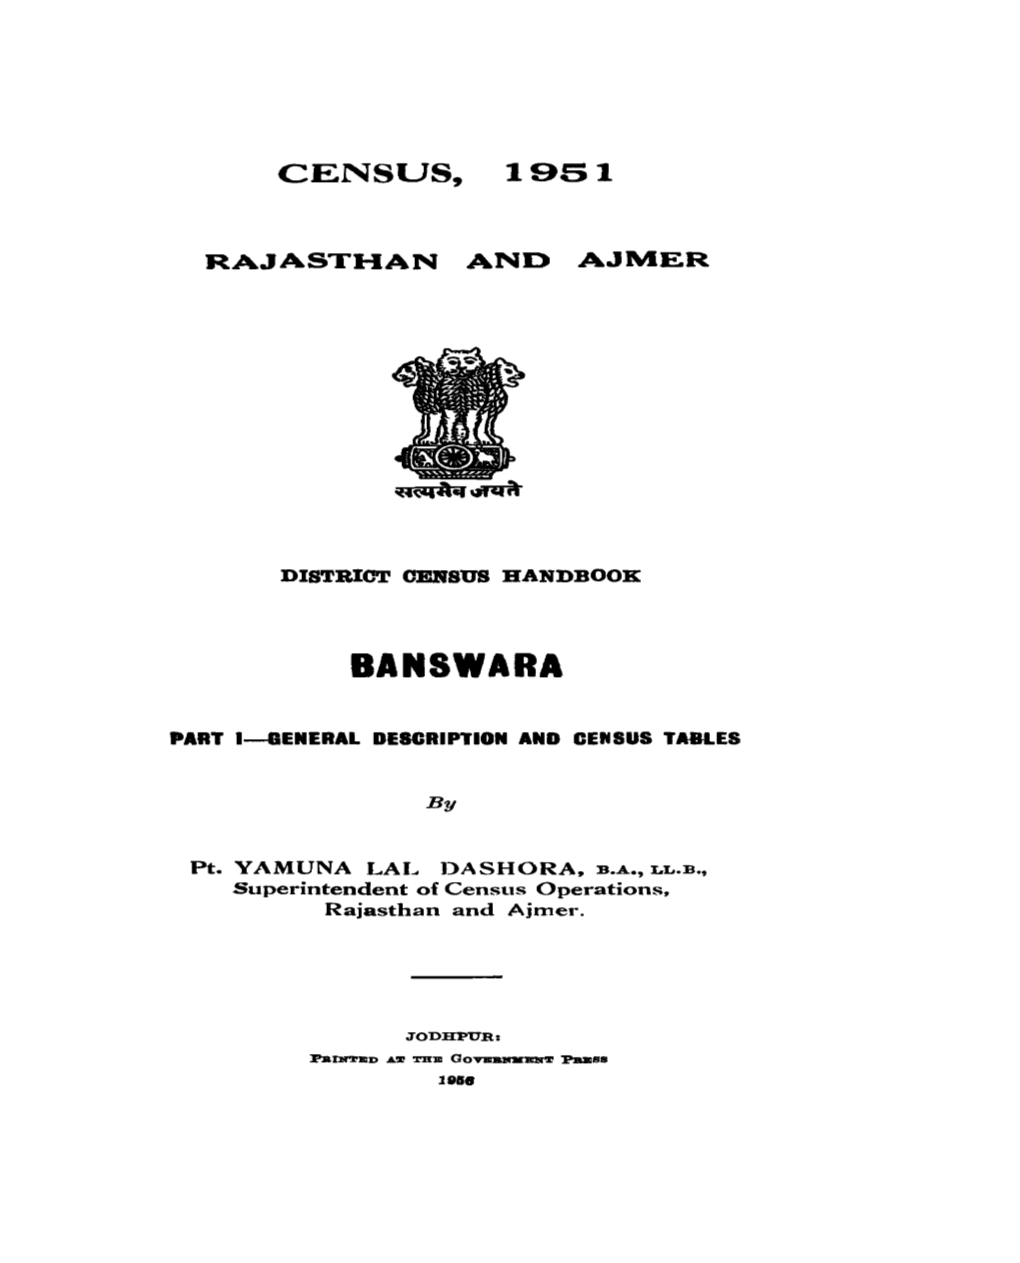 District Census Handbook, Banswara, Rajasthan